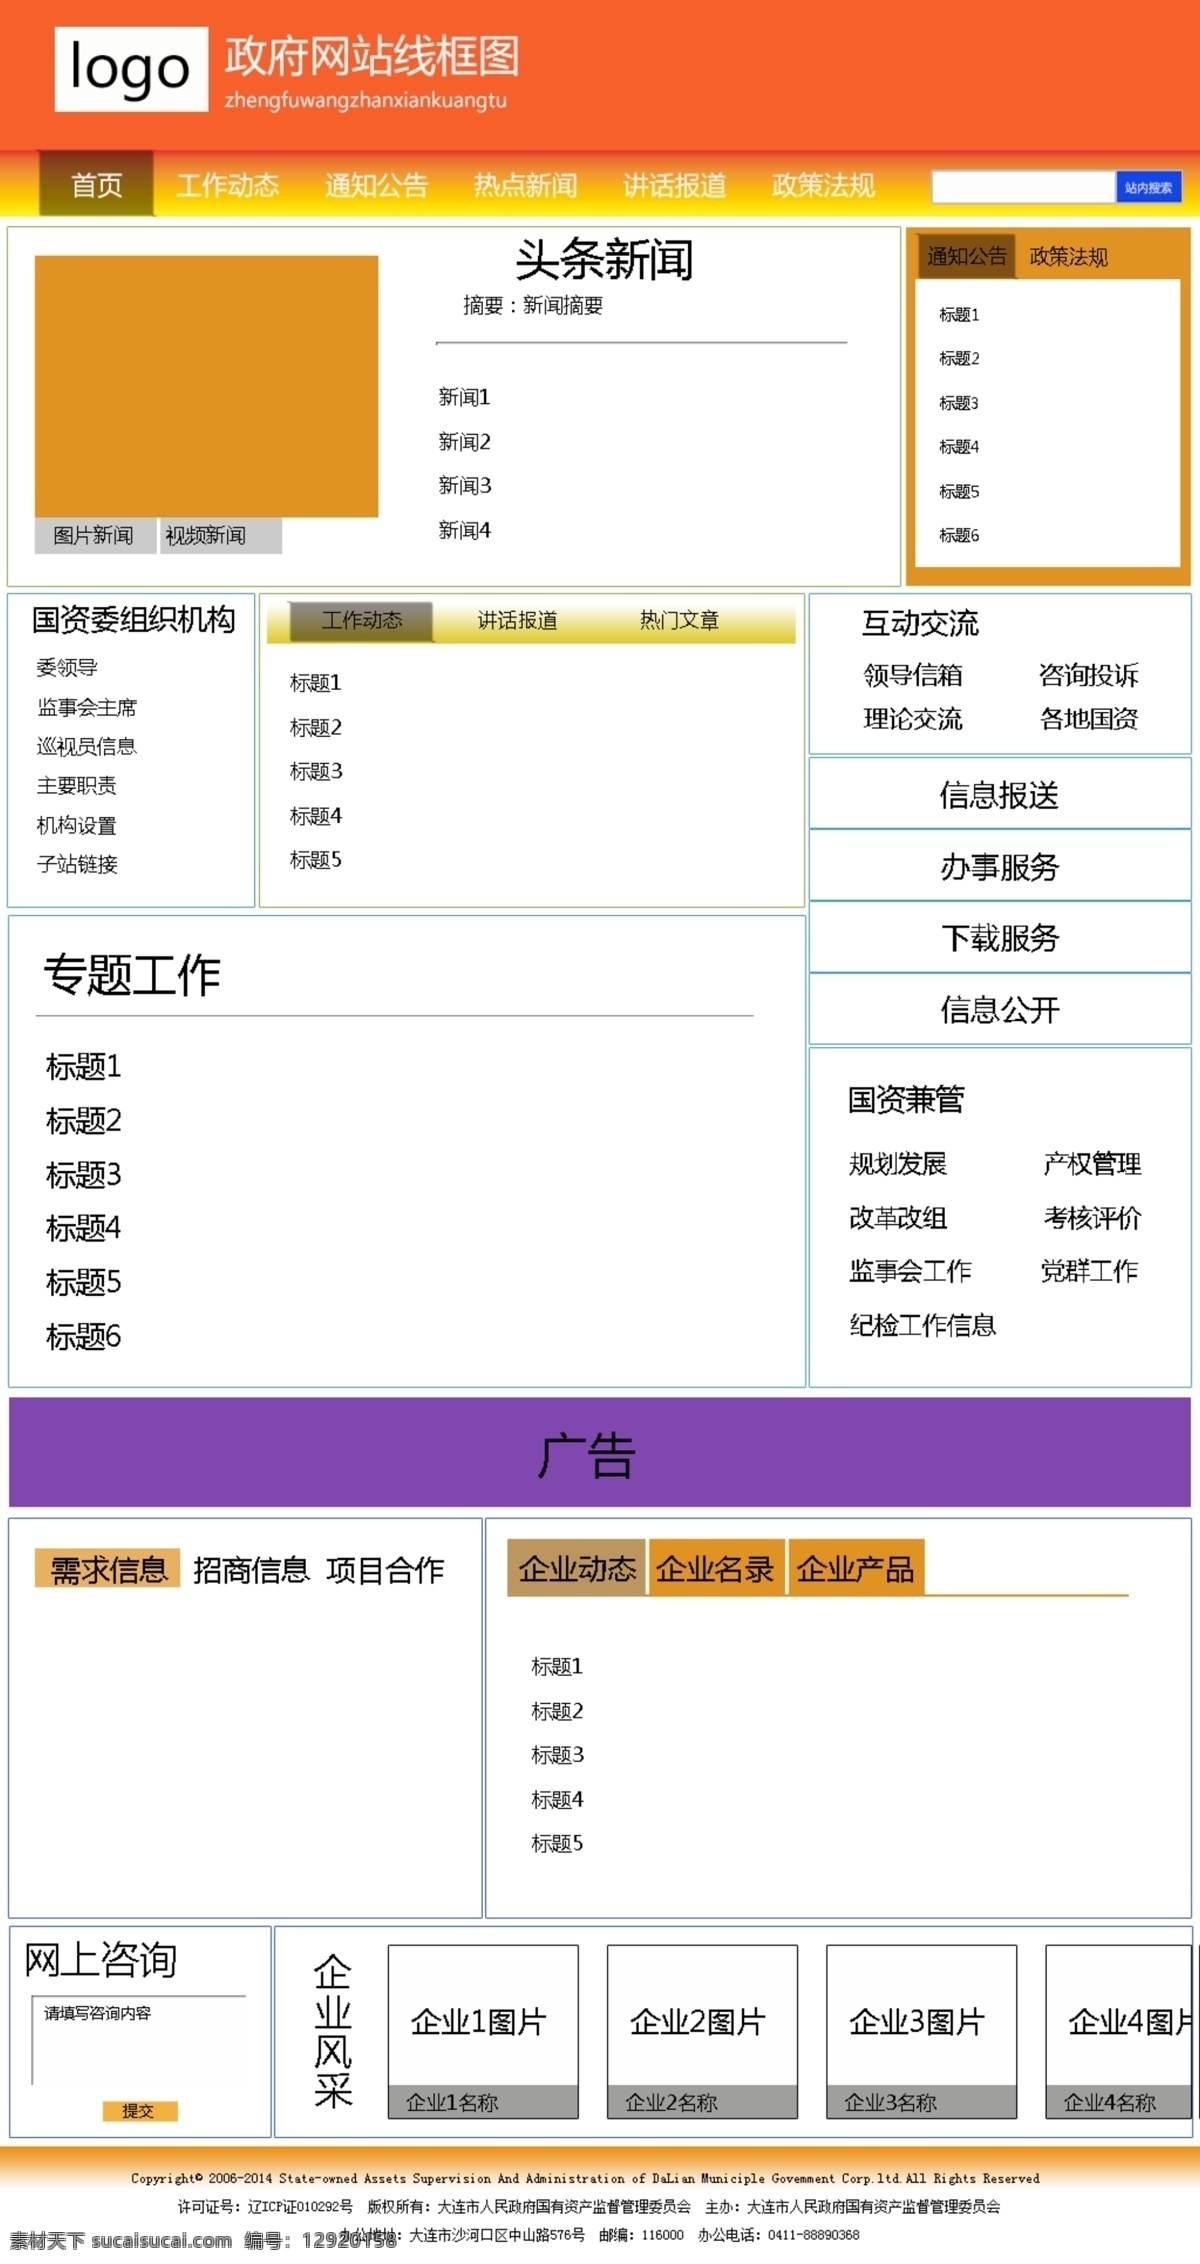 政府网站 线 框图 政府 网站 线框图 psd格式 分层设计 中文模板 web 界面设计